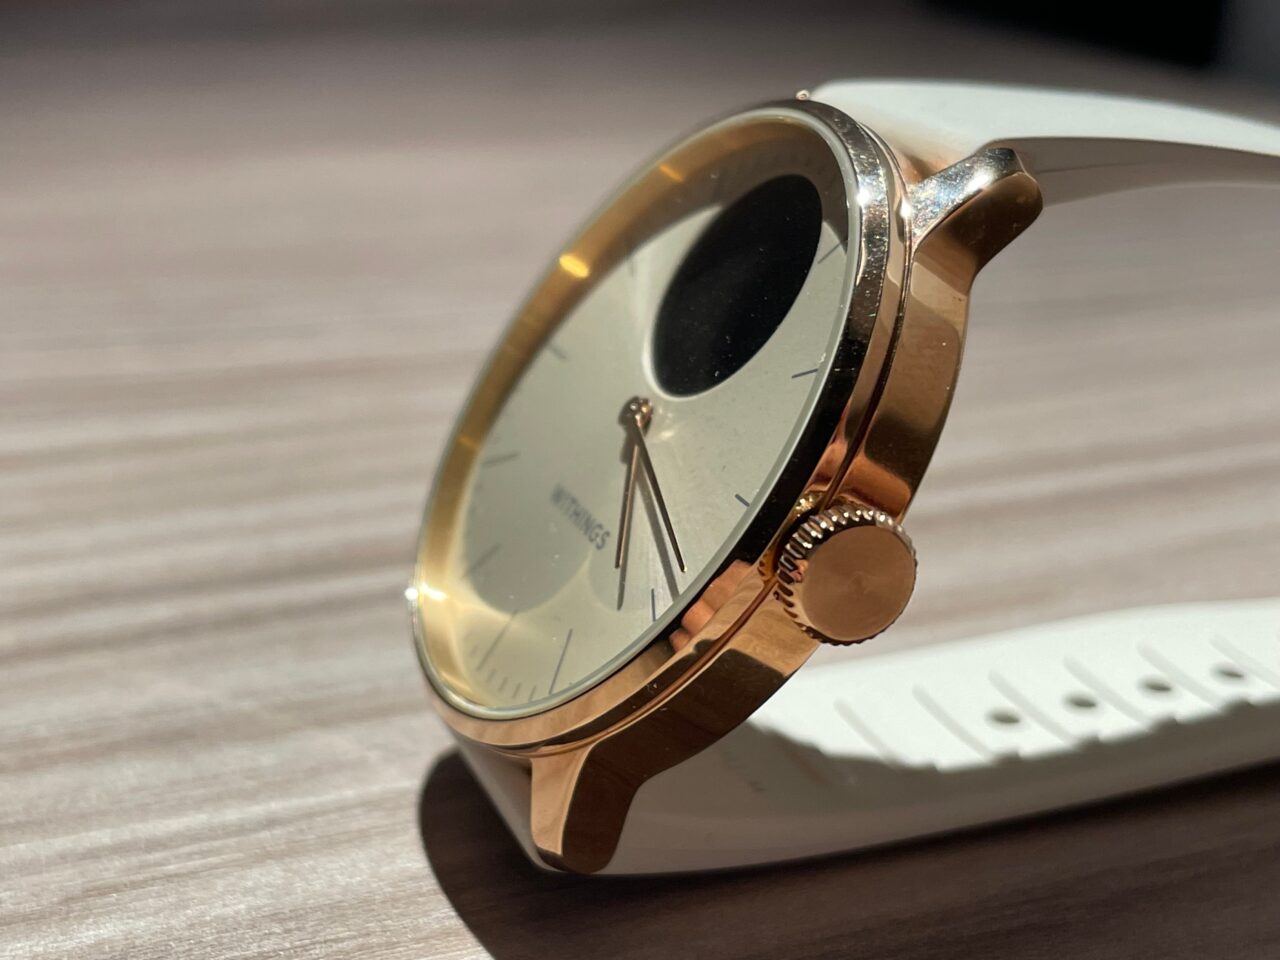 Zegarek na białym pasku położony na drewnianym blacie, złota tarcza odbija światło, widoczna koronka do ustawiania czasu.